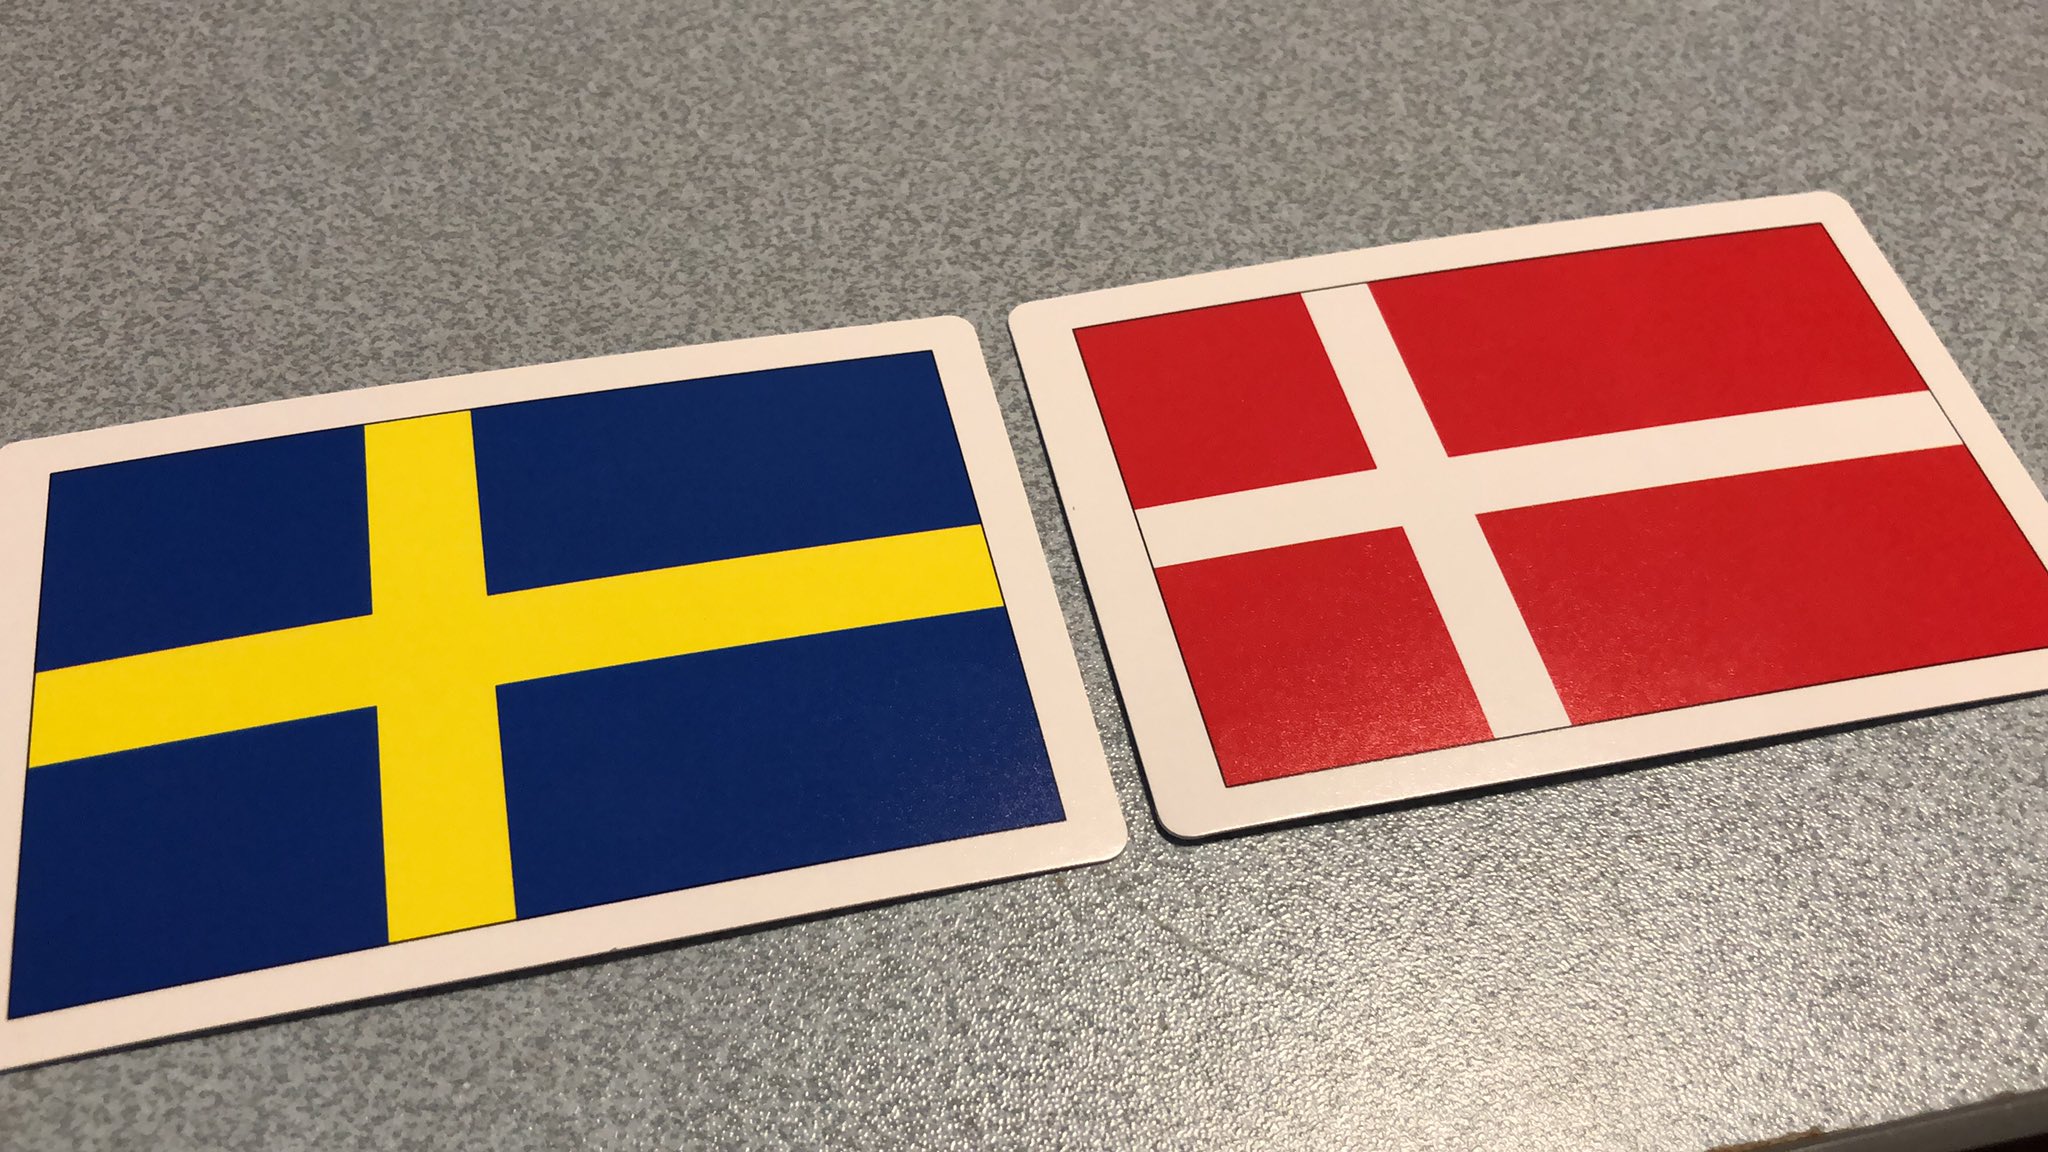 Kim38 国旗の簡単な覚え方 スウェーデン デンマークの法則 デン繋がりで 色違い T Co Umokqseitp Twitter